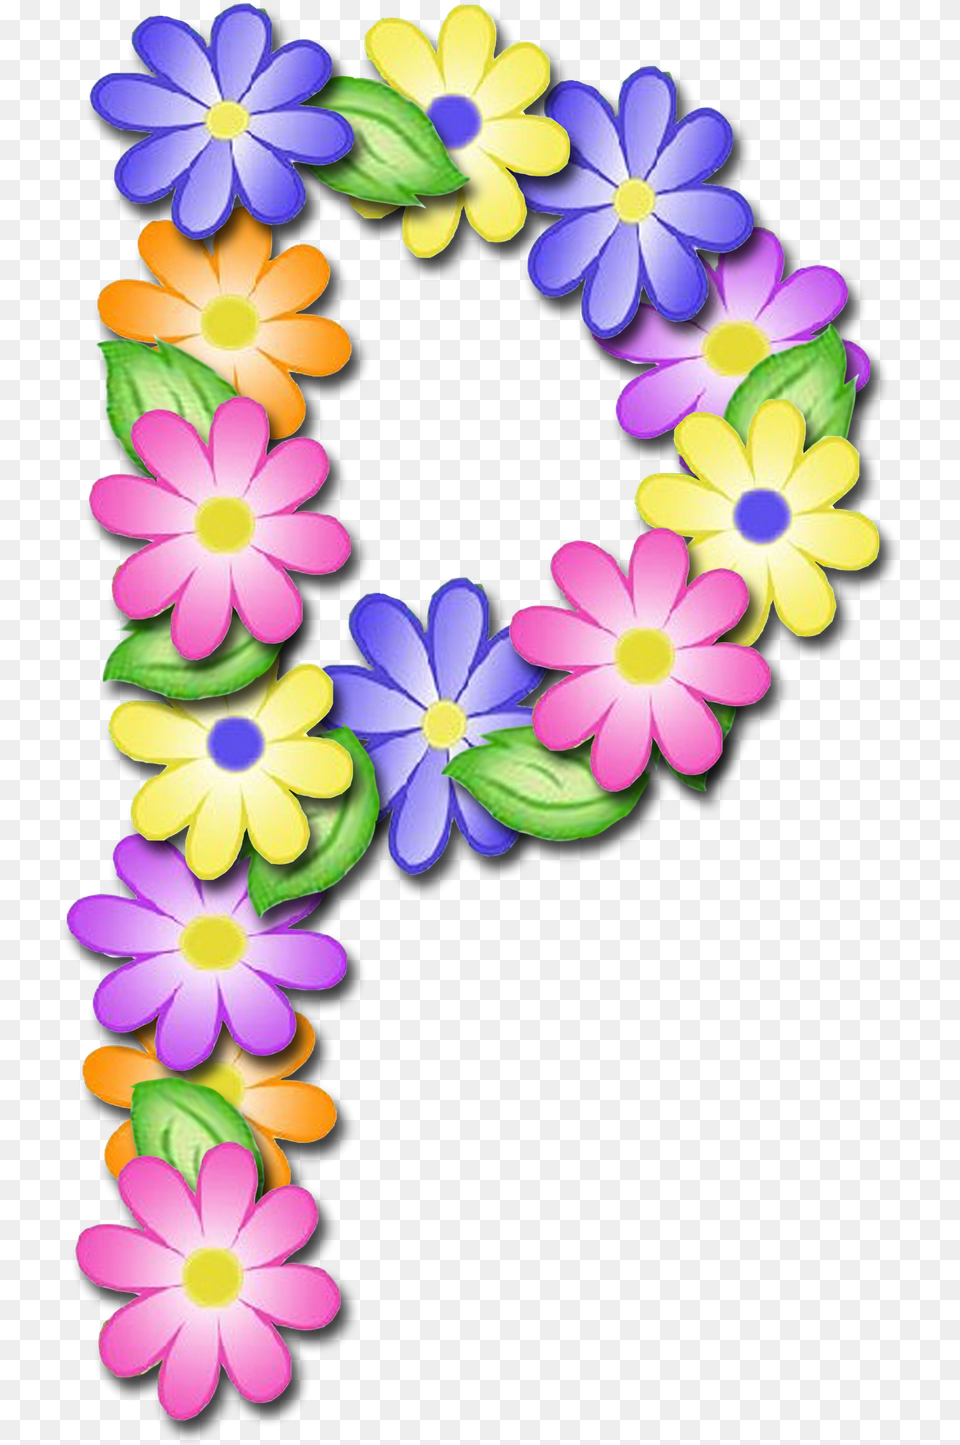 Letras De Flores P, Accessories, Daisy, Flower, Flower Arrangement Png Image